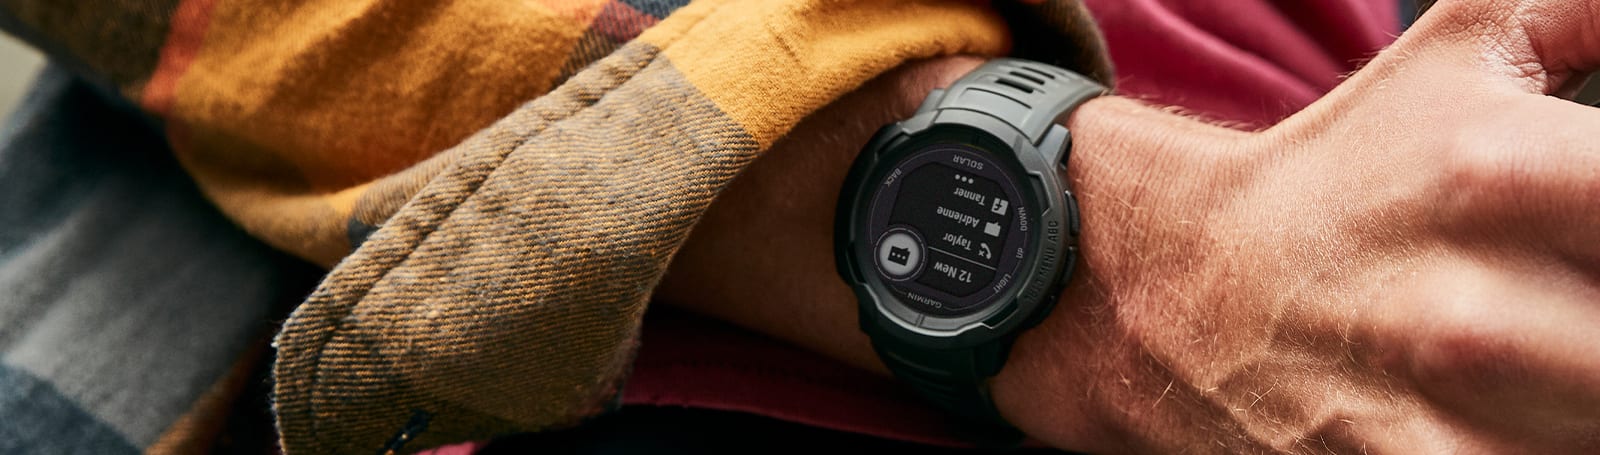 Watches - NZ GPS